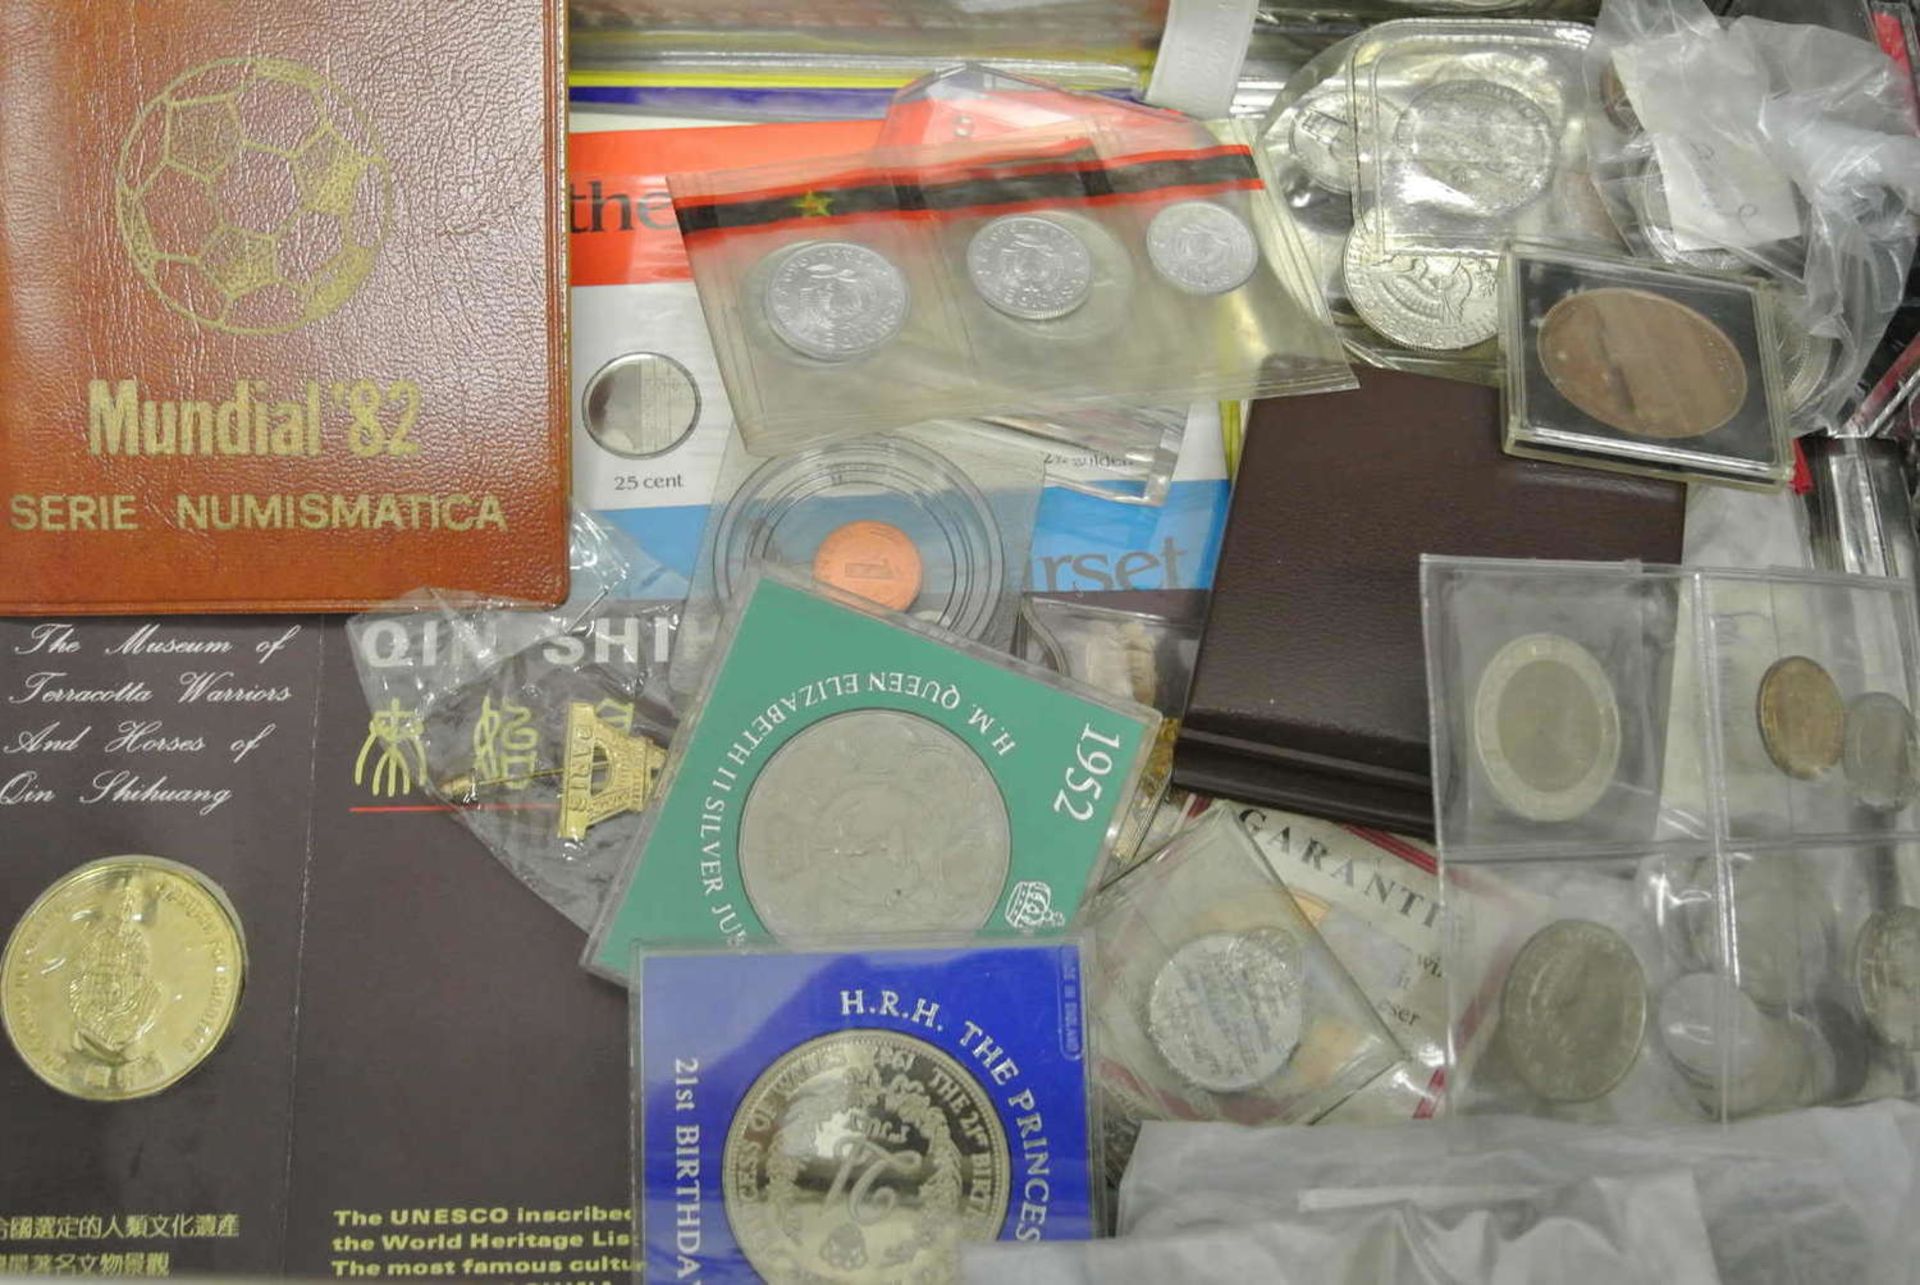 1 Blechdose mit Münzfundus, dabei z.Bsp. 1 Kursmünzsatz 1989 Russland, Medaillen, viele Münzen - Bild 2 aus 2